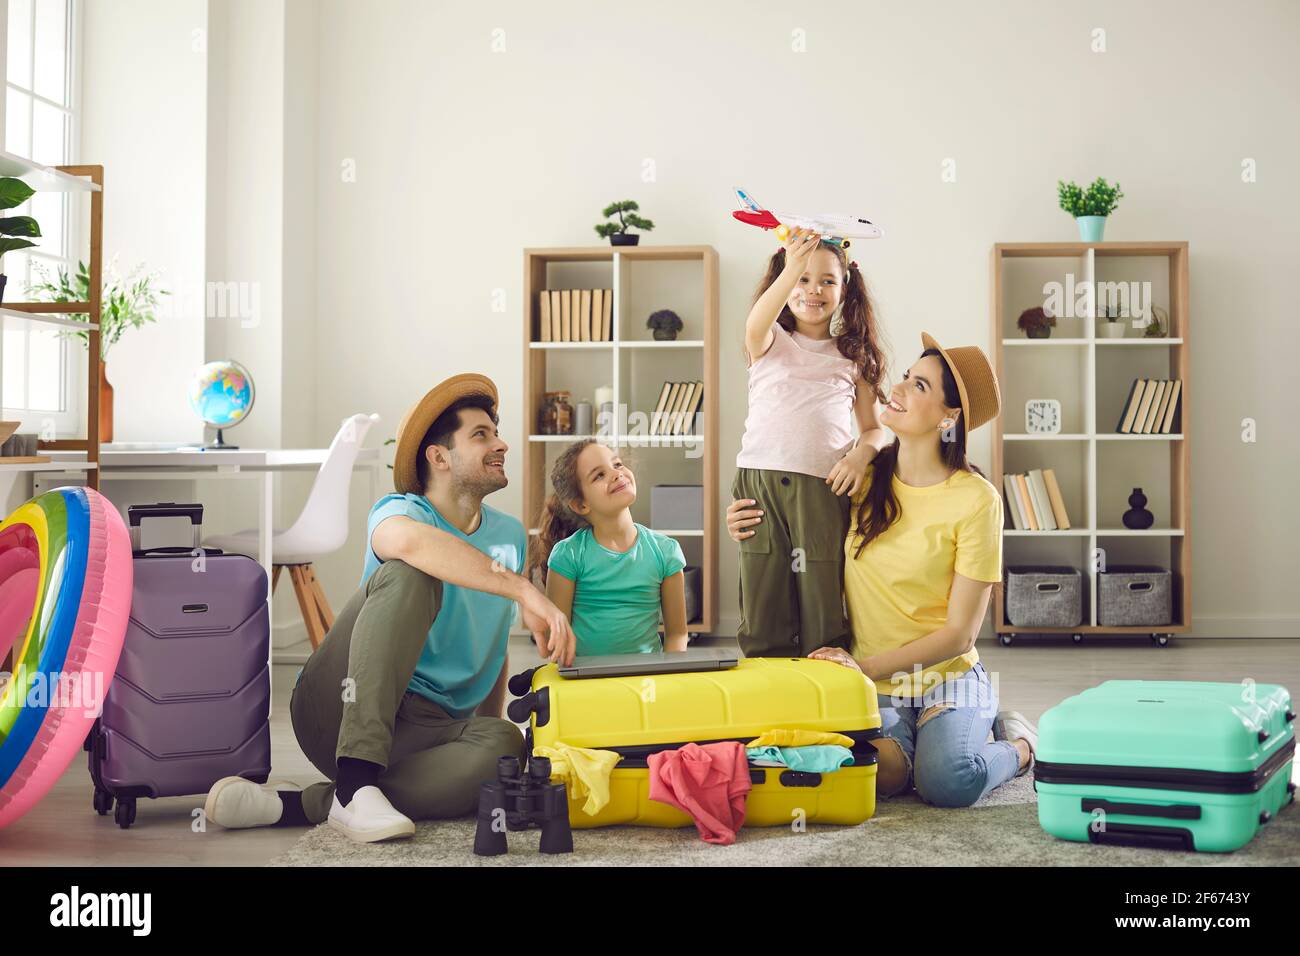 Glückliche Familie mit Kindern auf dem Boden mit verpackten Sachen  Reisekoffer herum Stockfotografie - Alamy